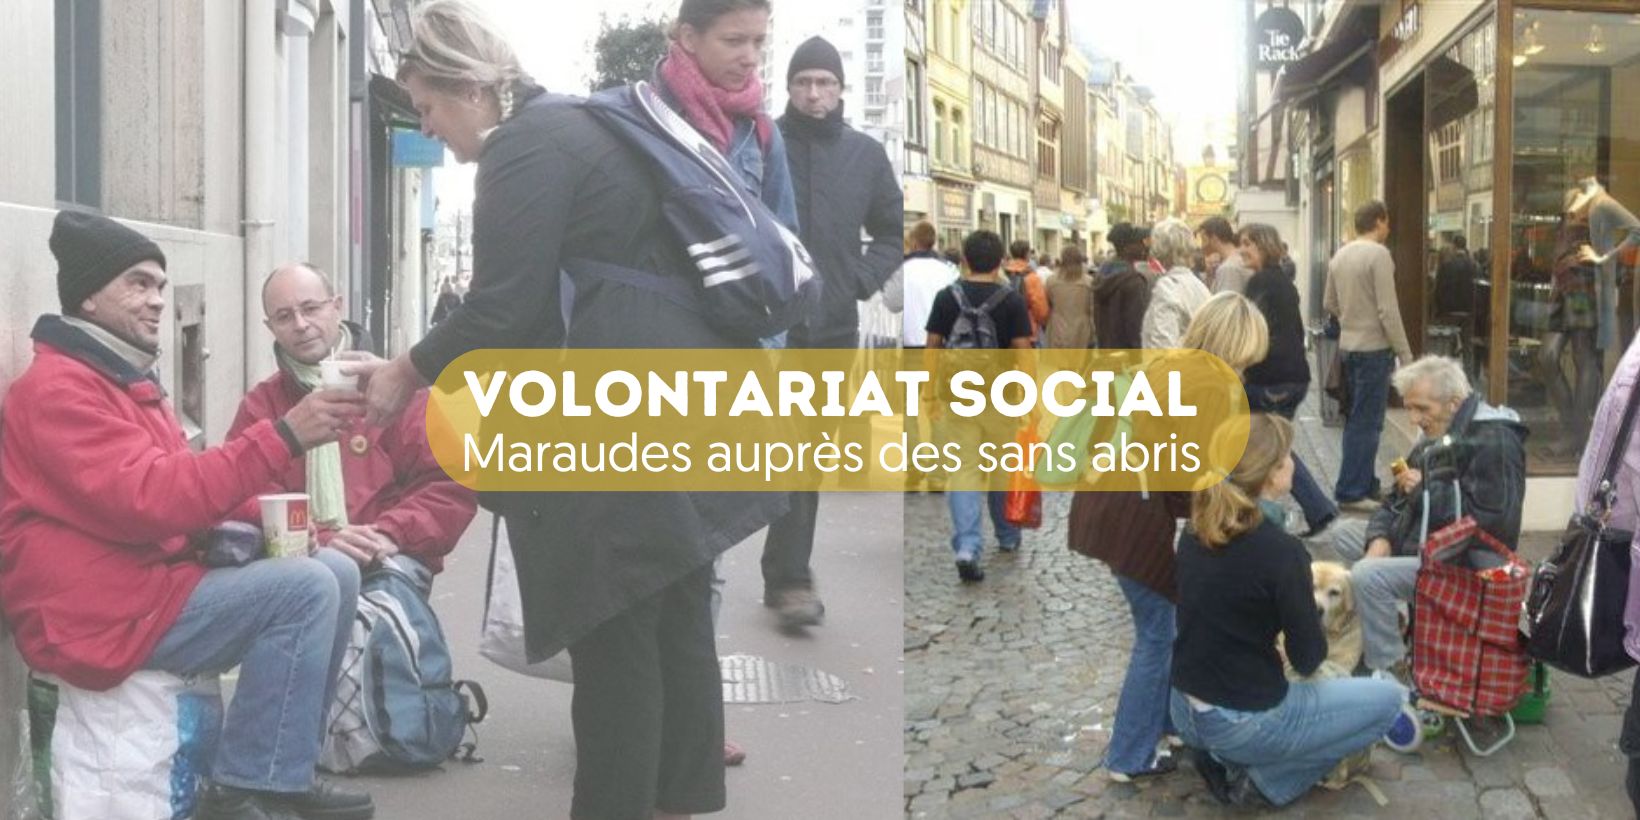 Volontariat social - Maraudes auprès des sans abris